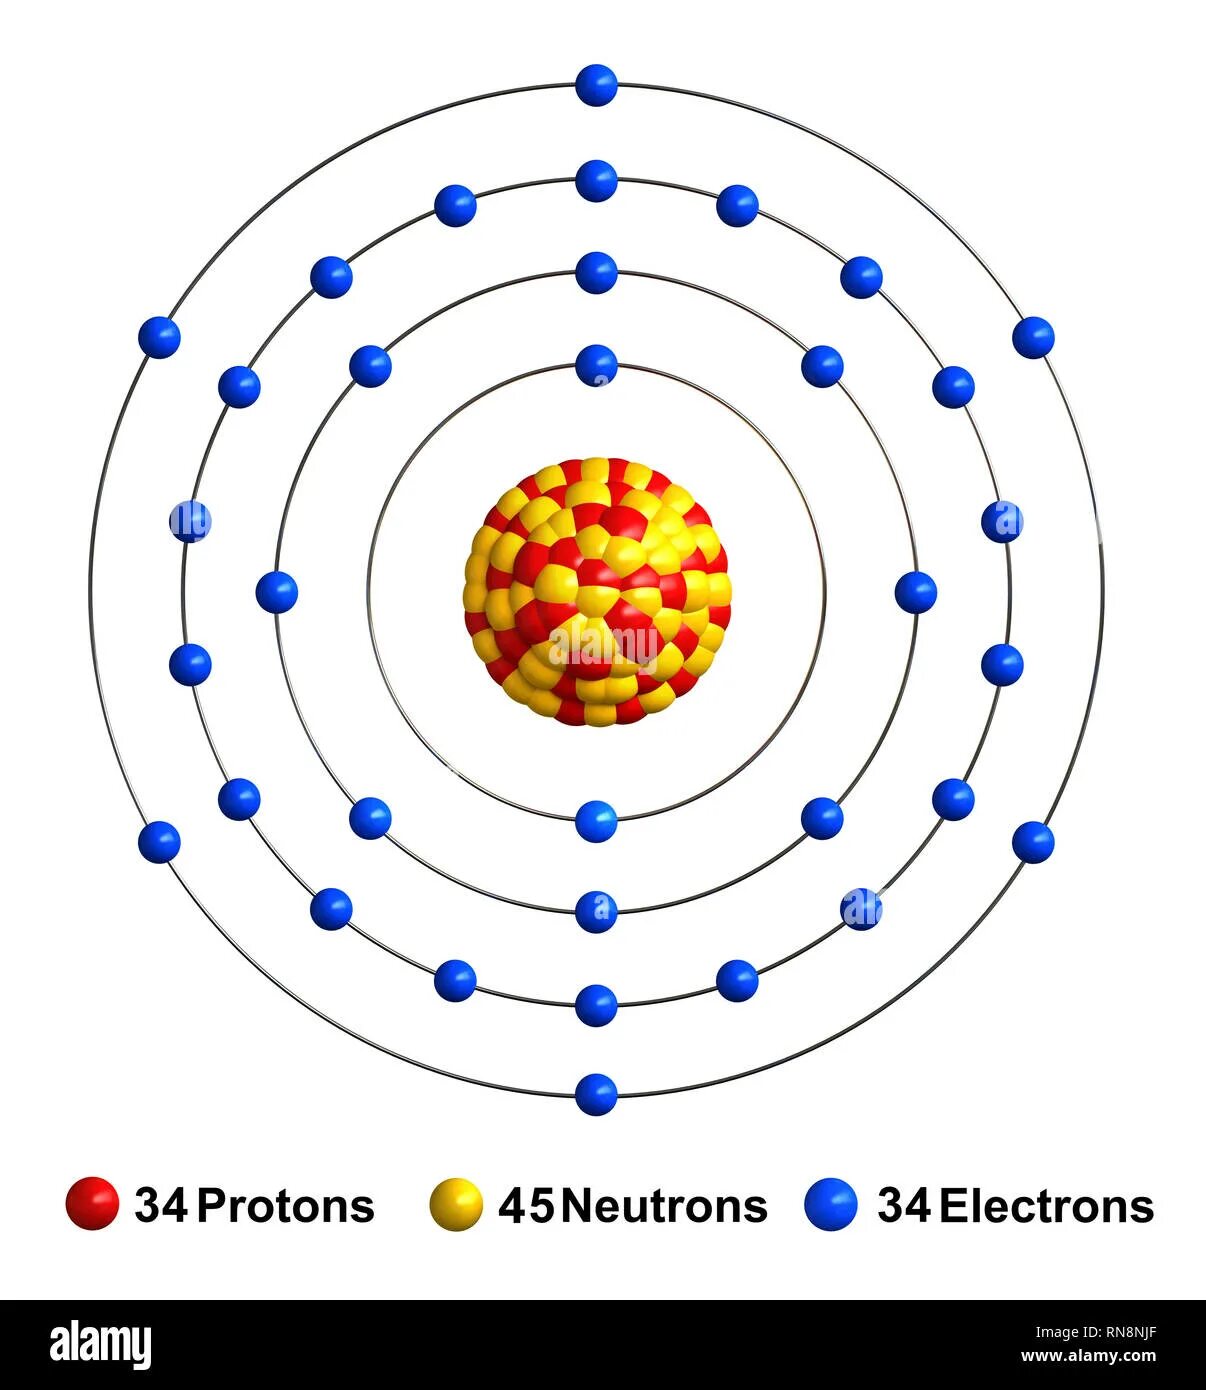 Кольцегранная модель атома. Кольцегранная модель атома Снельсона. Атом галлия. Волногранная модель атома. Ядро атома марганца